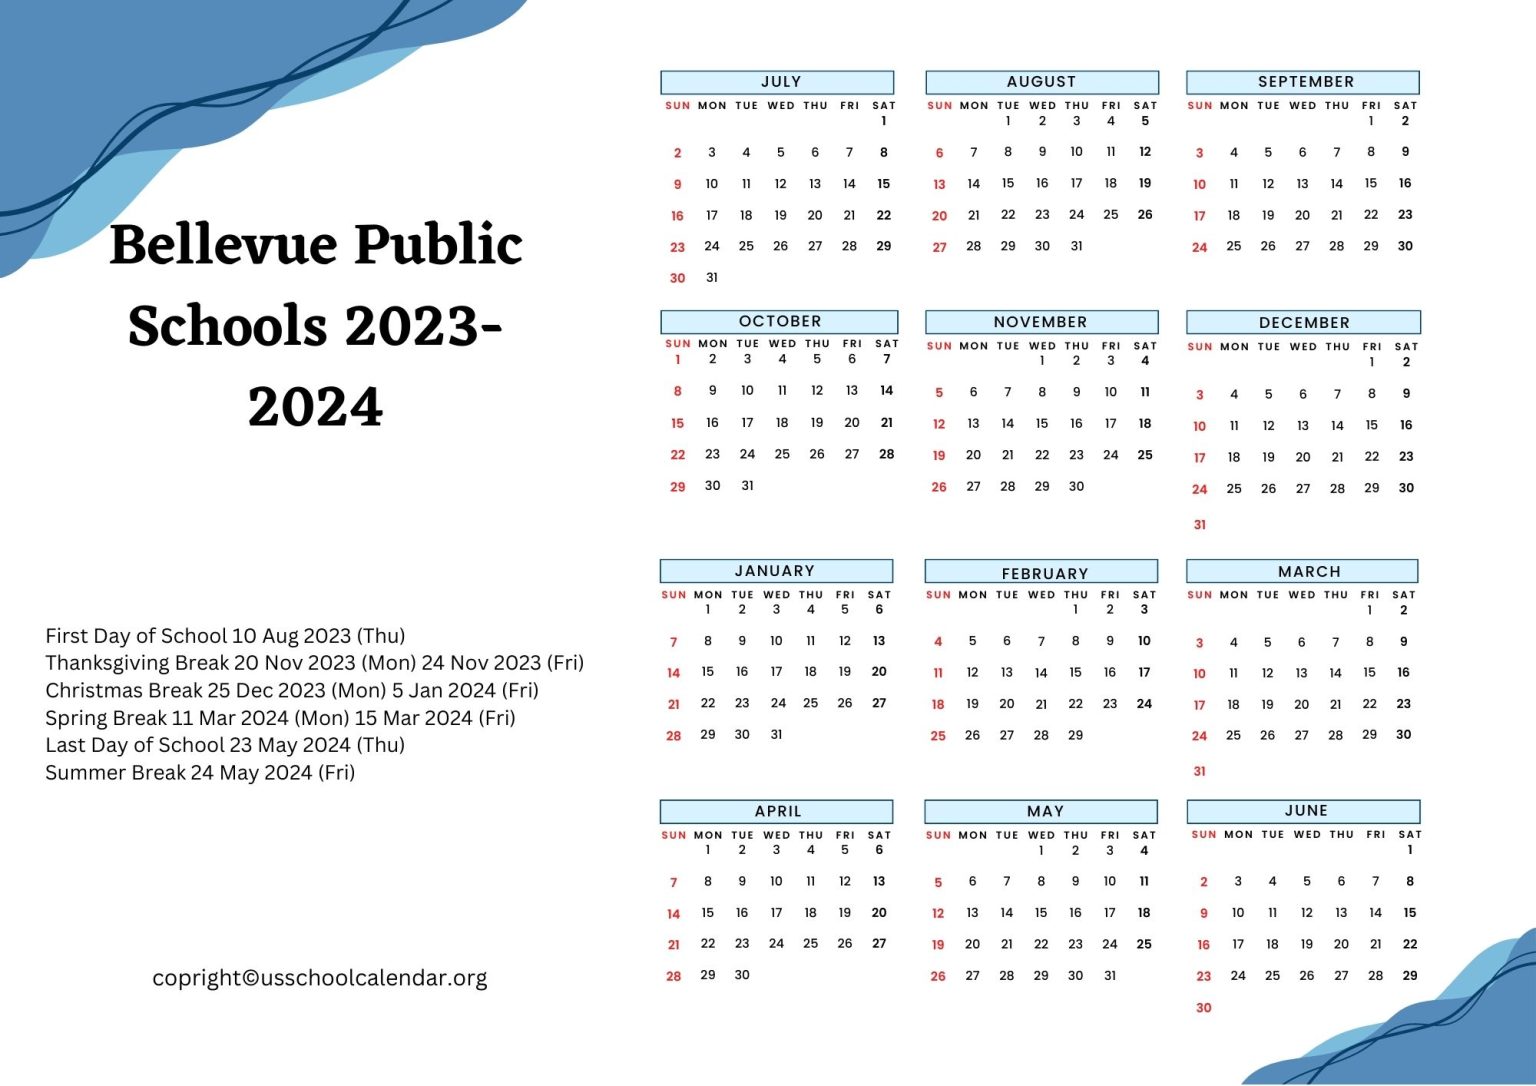 Bellevue Public Schools Calendar with Holidays 20232024